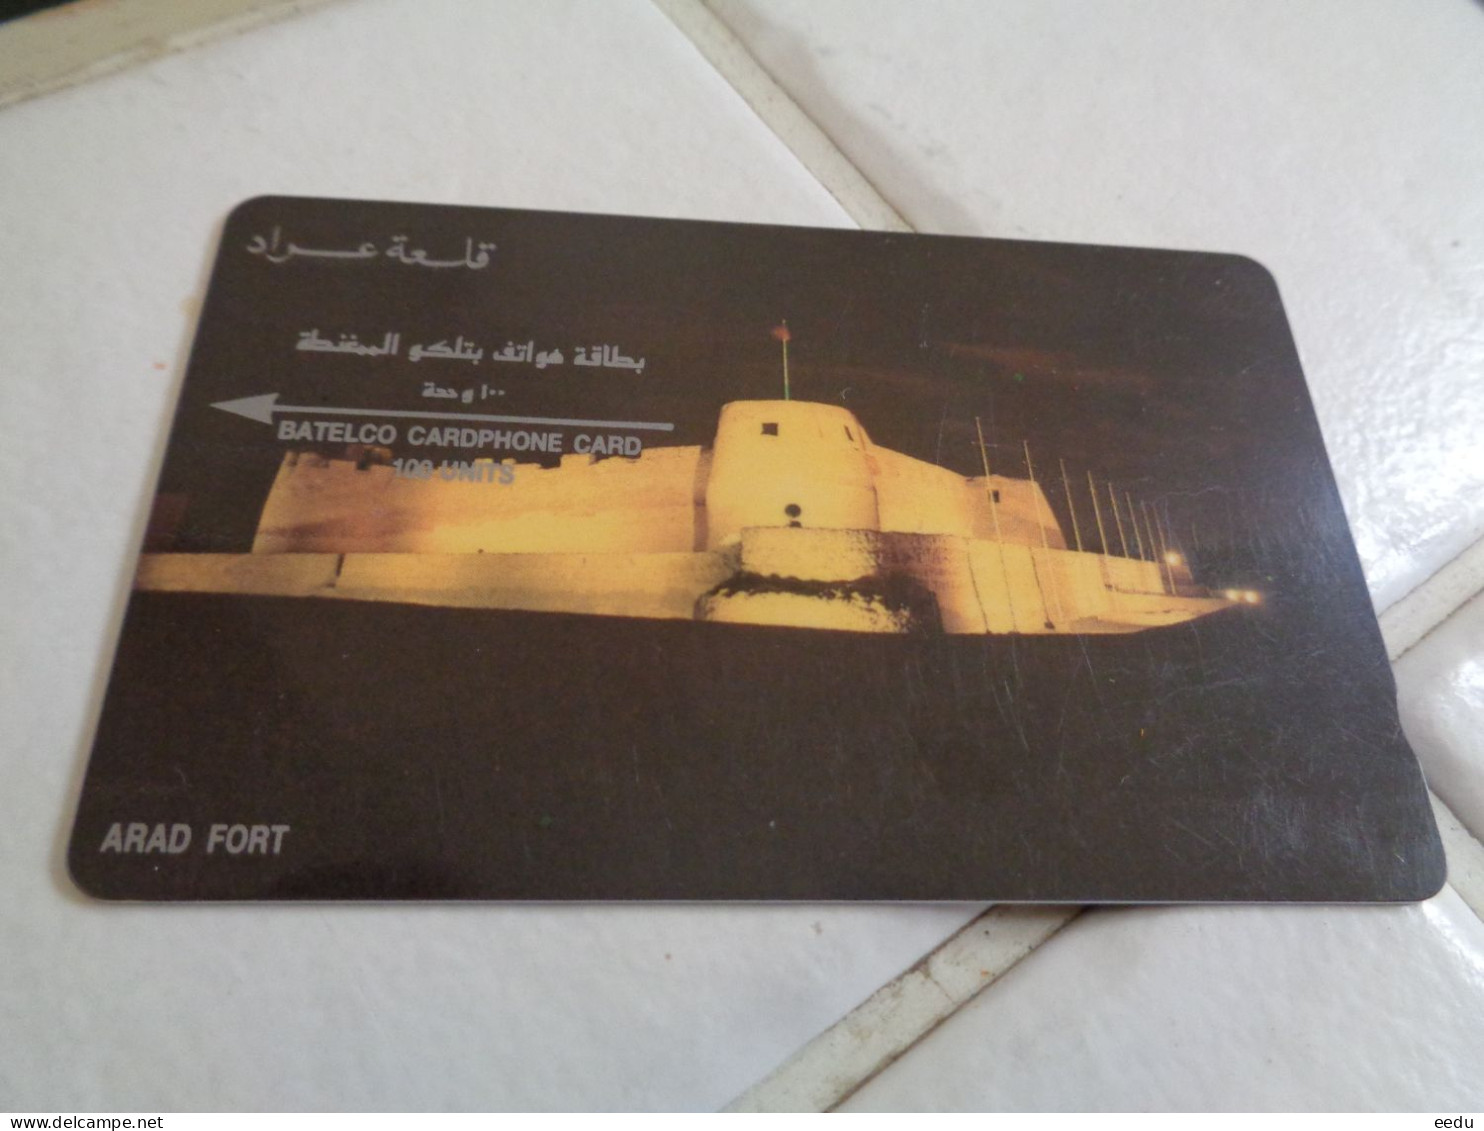 Bahrain Phonecard - Baharain